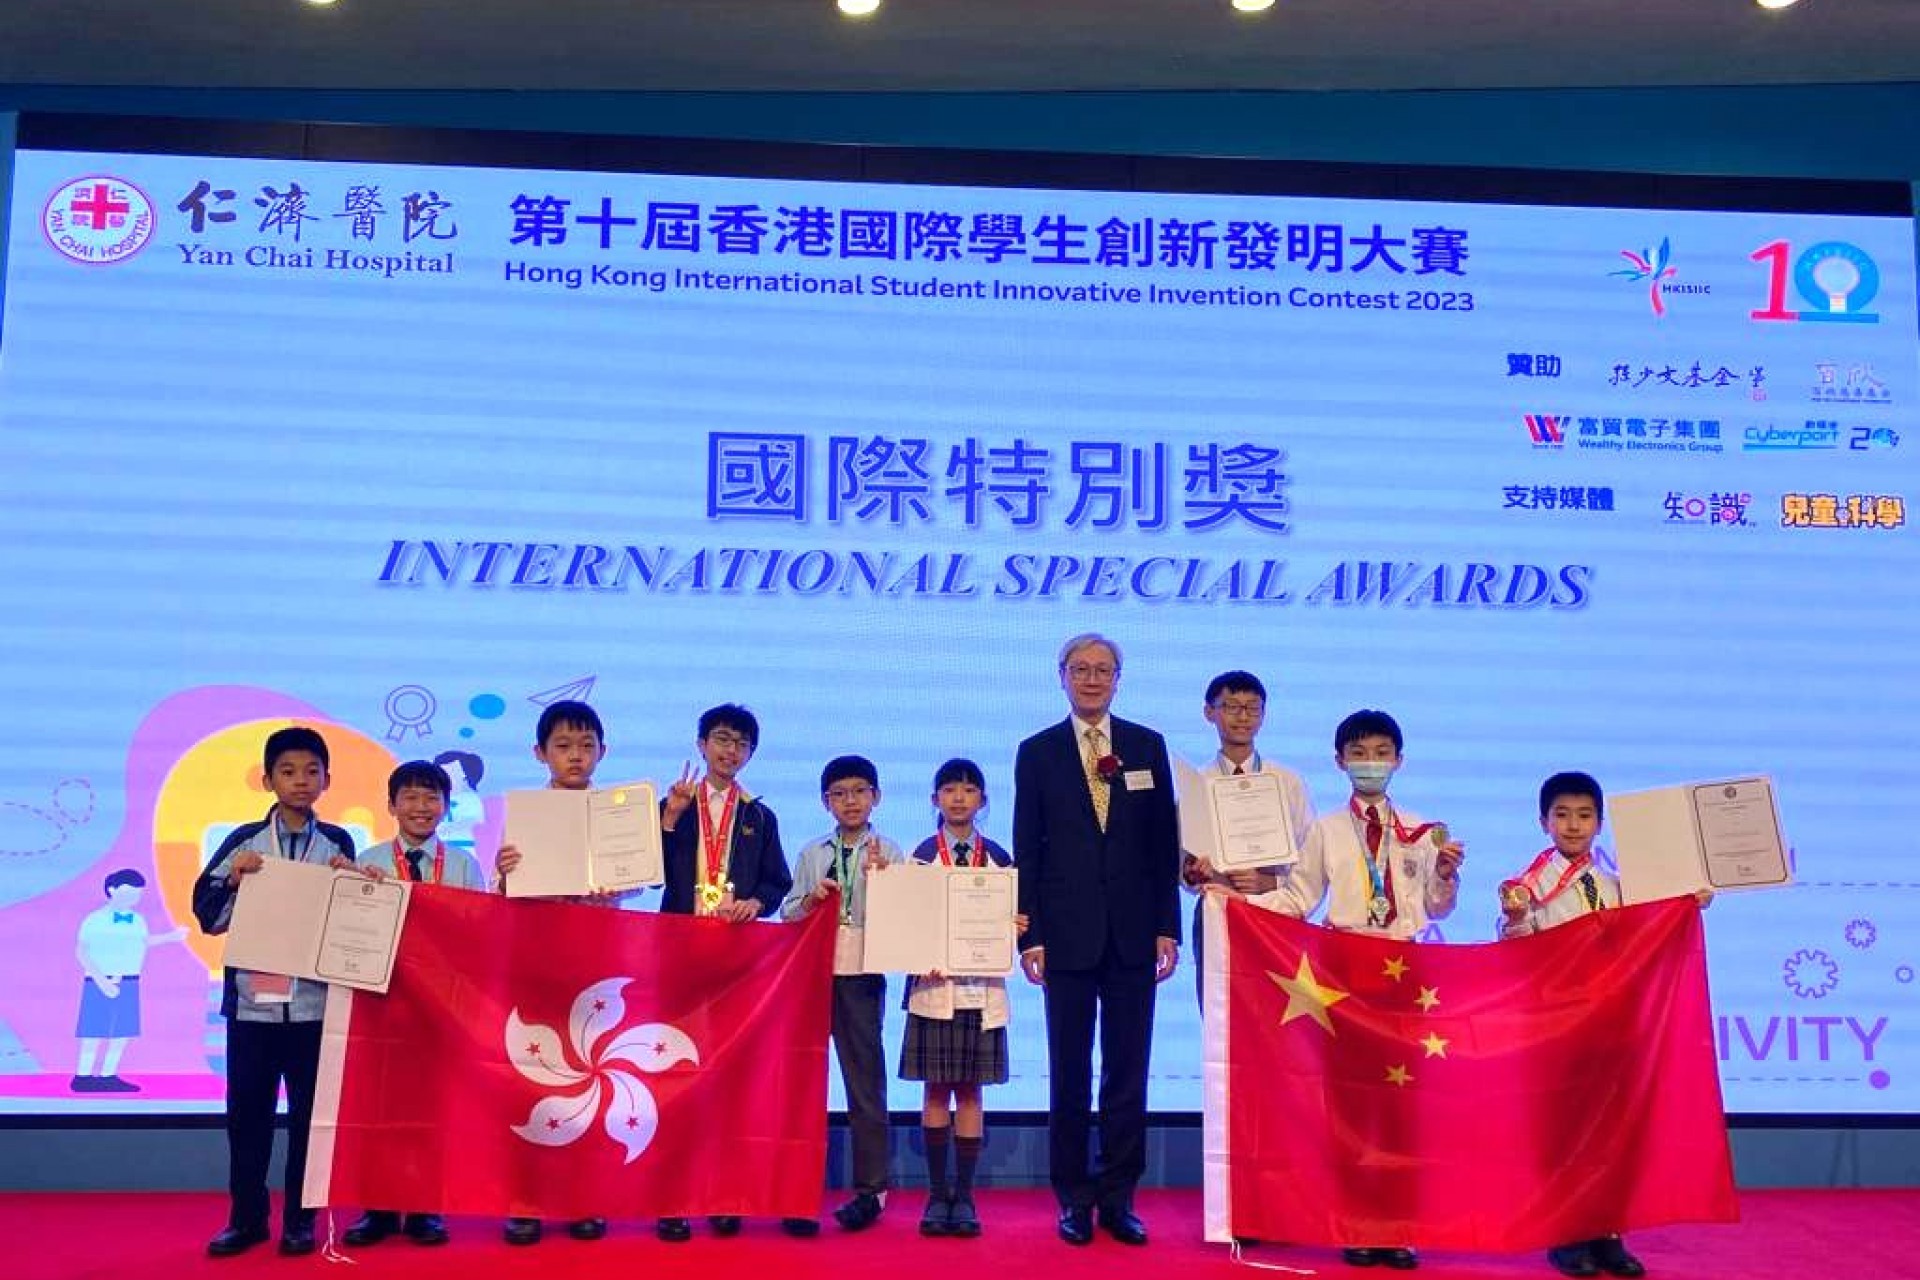 2023.12.16 機械人創科隊於「第十屆香港國際學生創新發明大賽」榮獲銅獎及國際特別獎